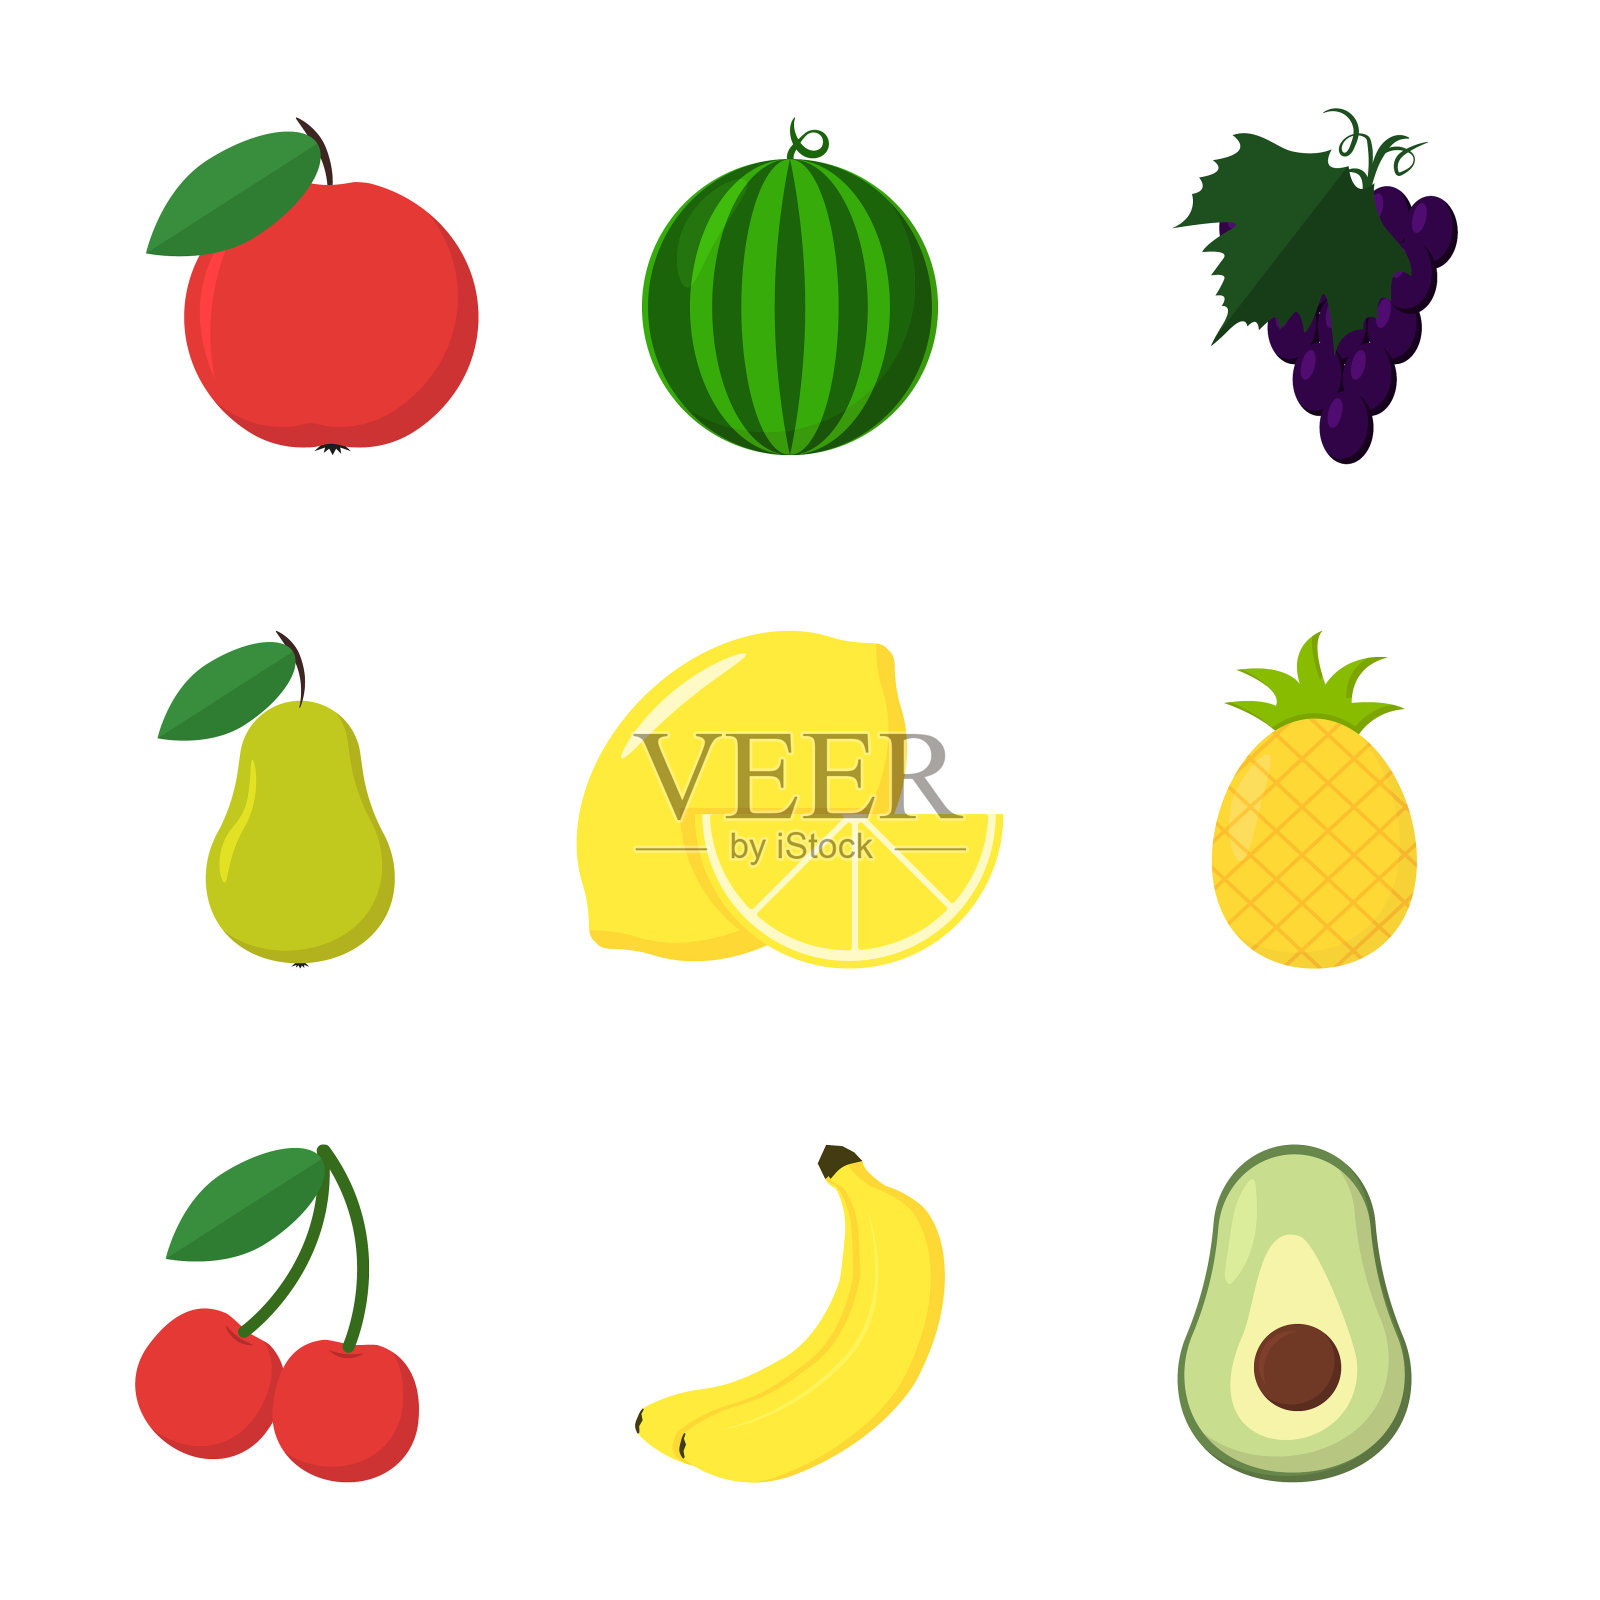 一套九个水果在扁平风格插画图片素材